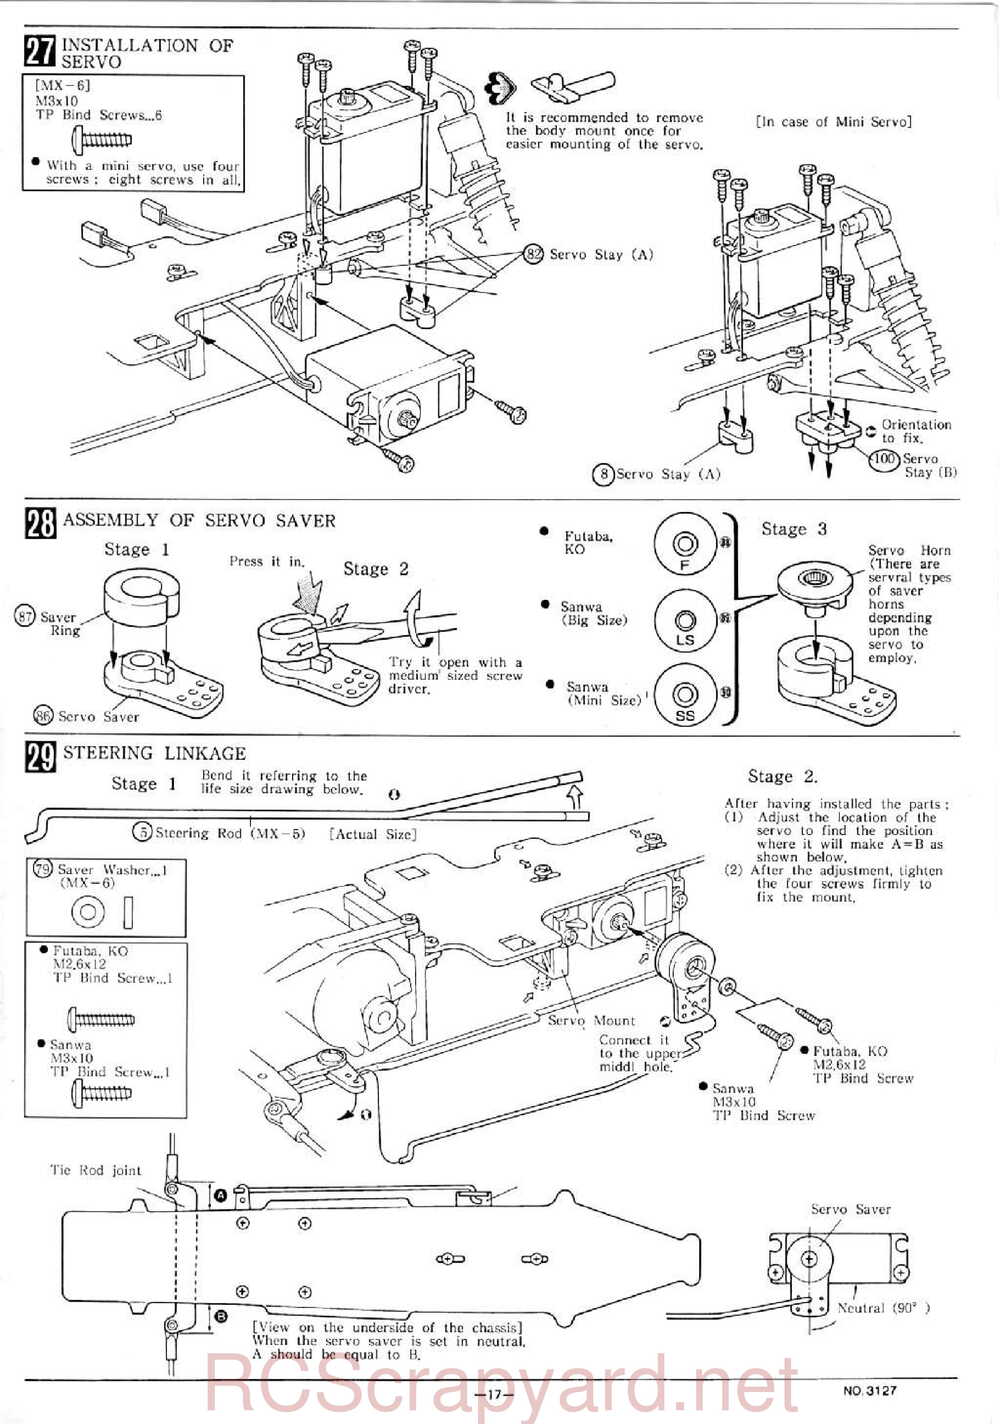 Kyosho - 3127 - Maxxum FF - Manual - Page 17